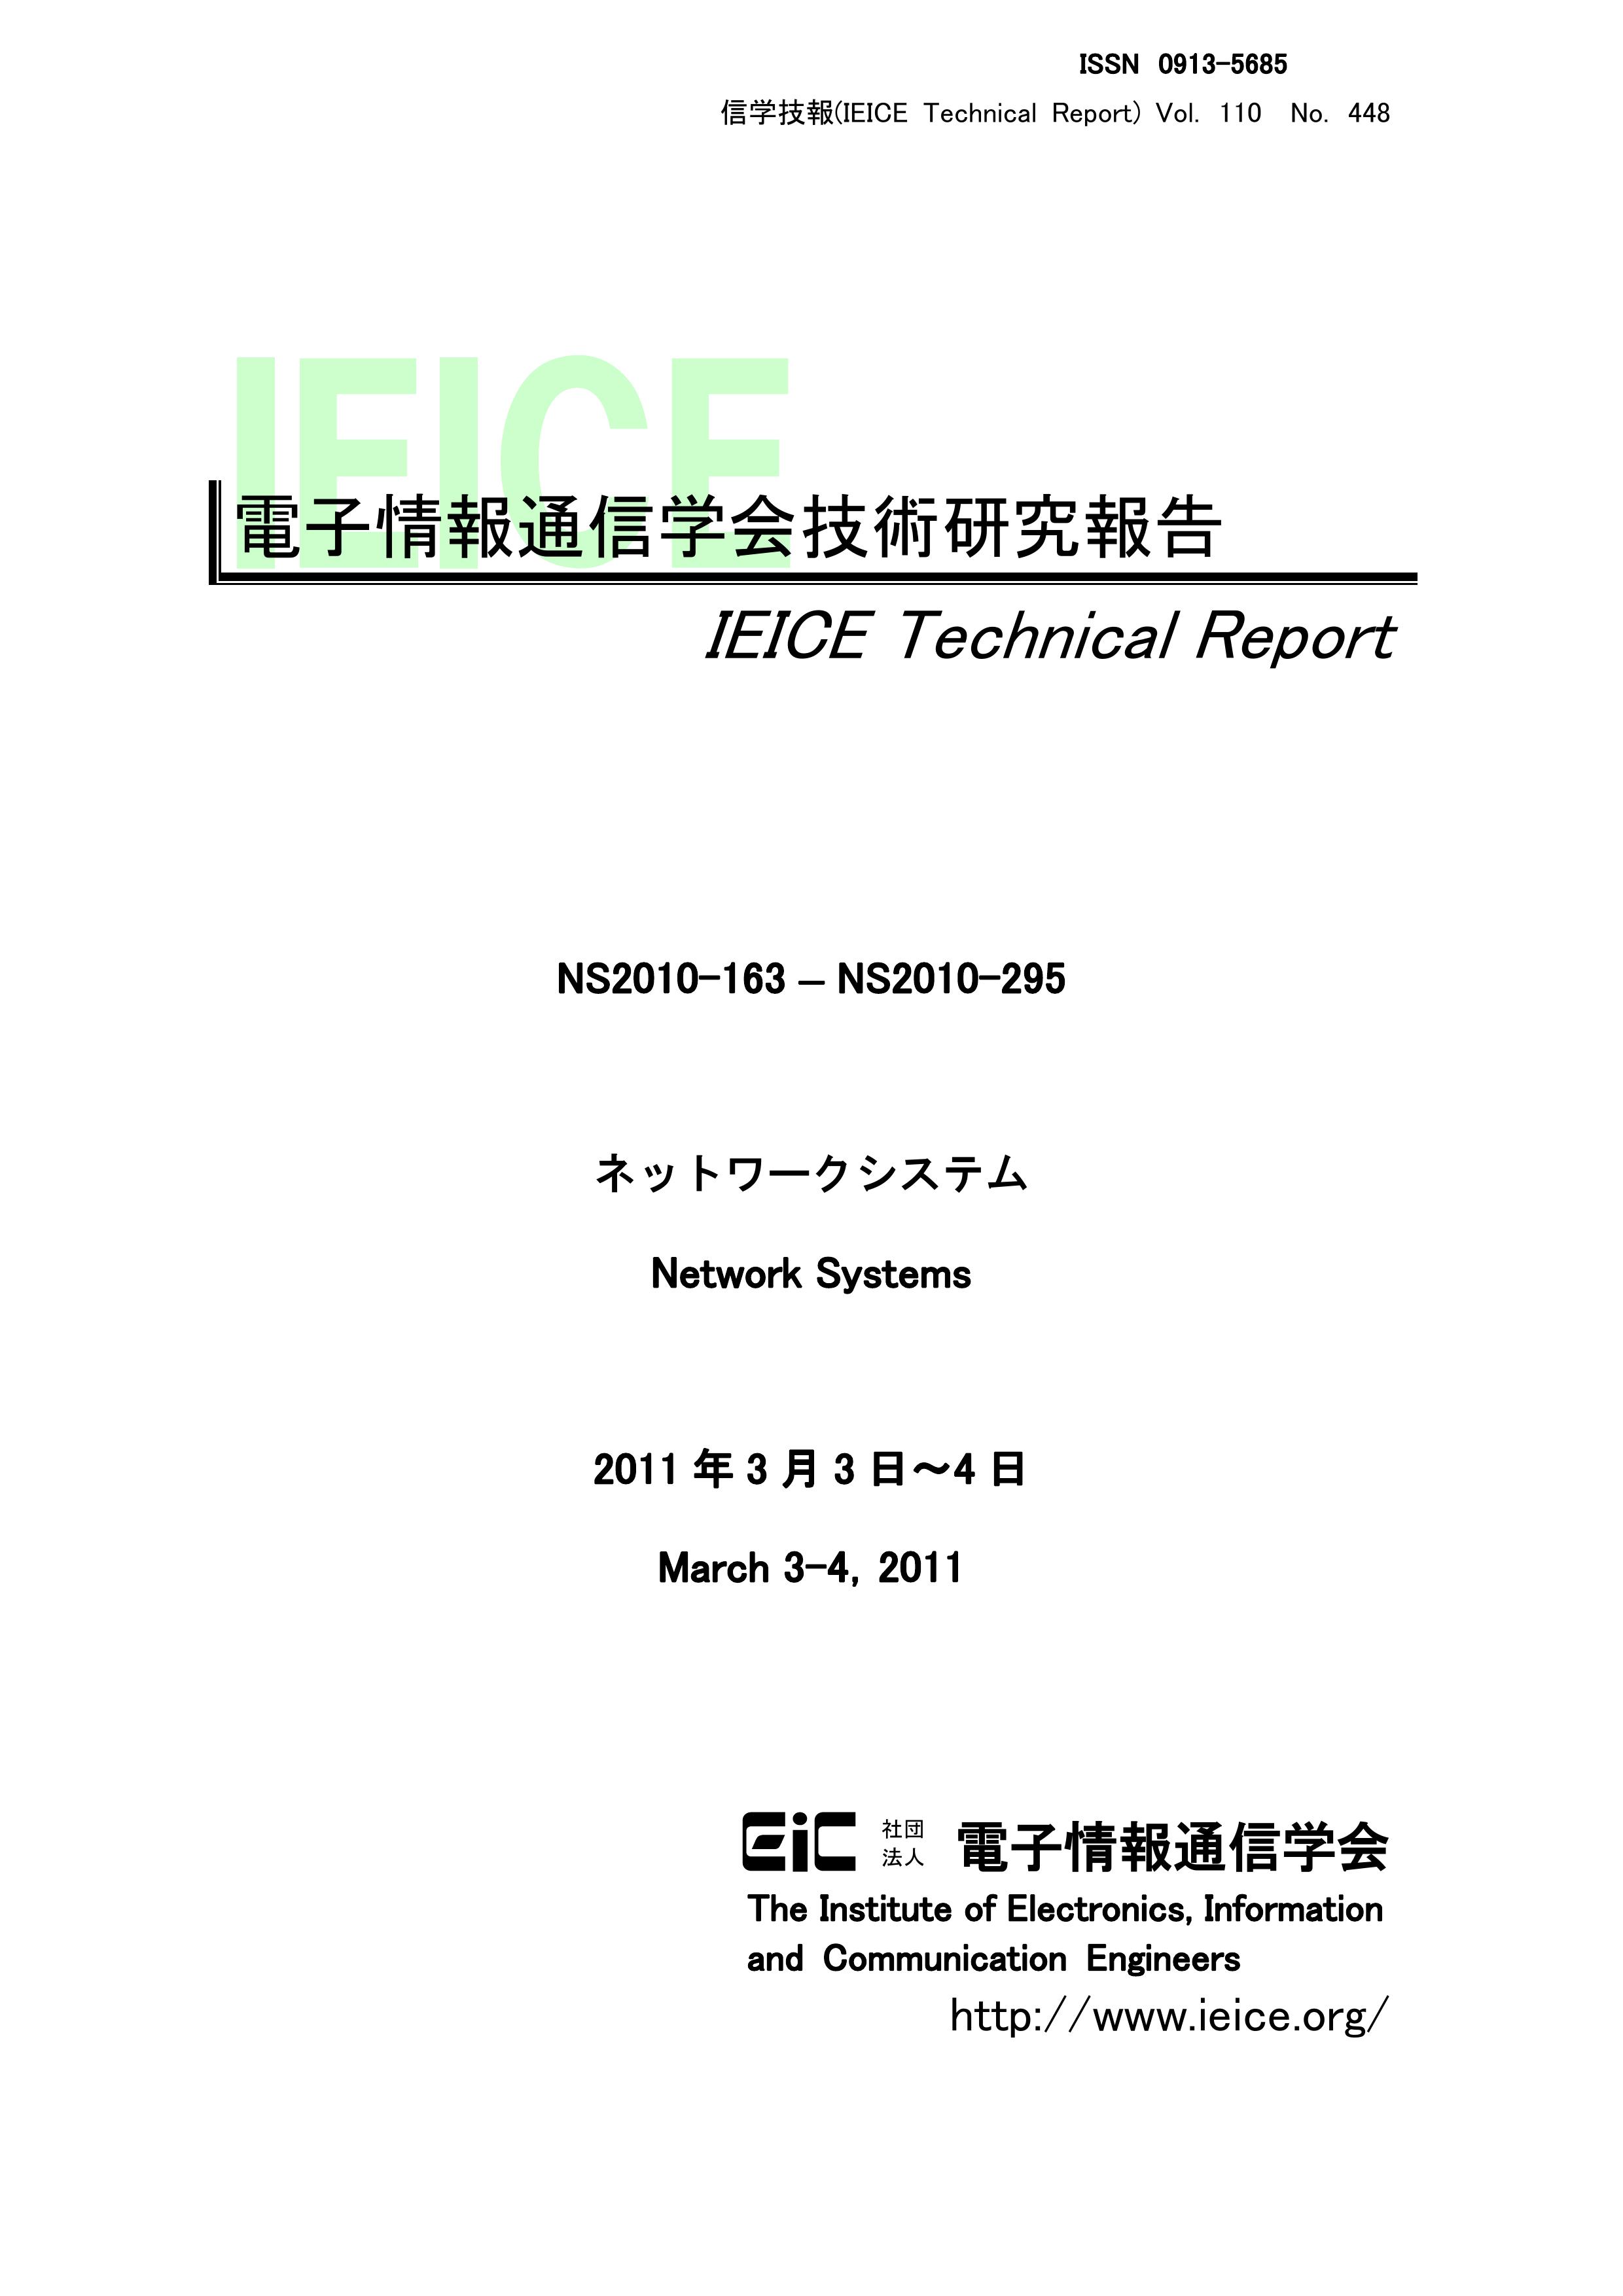 電子情報通信学会技術研究報告, vol 110, no 448, 2011